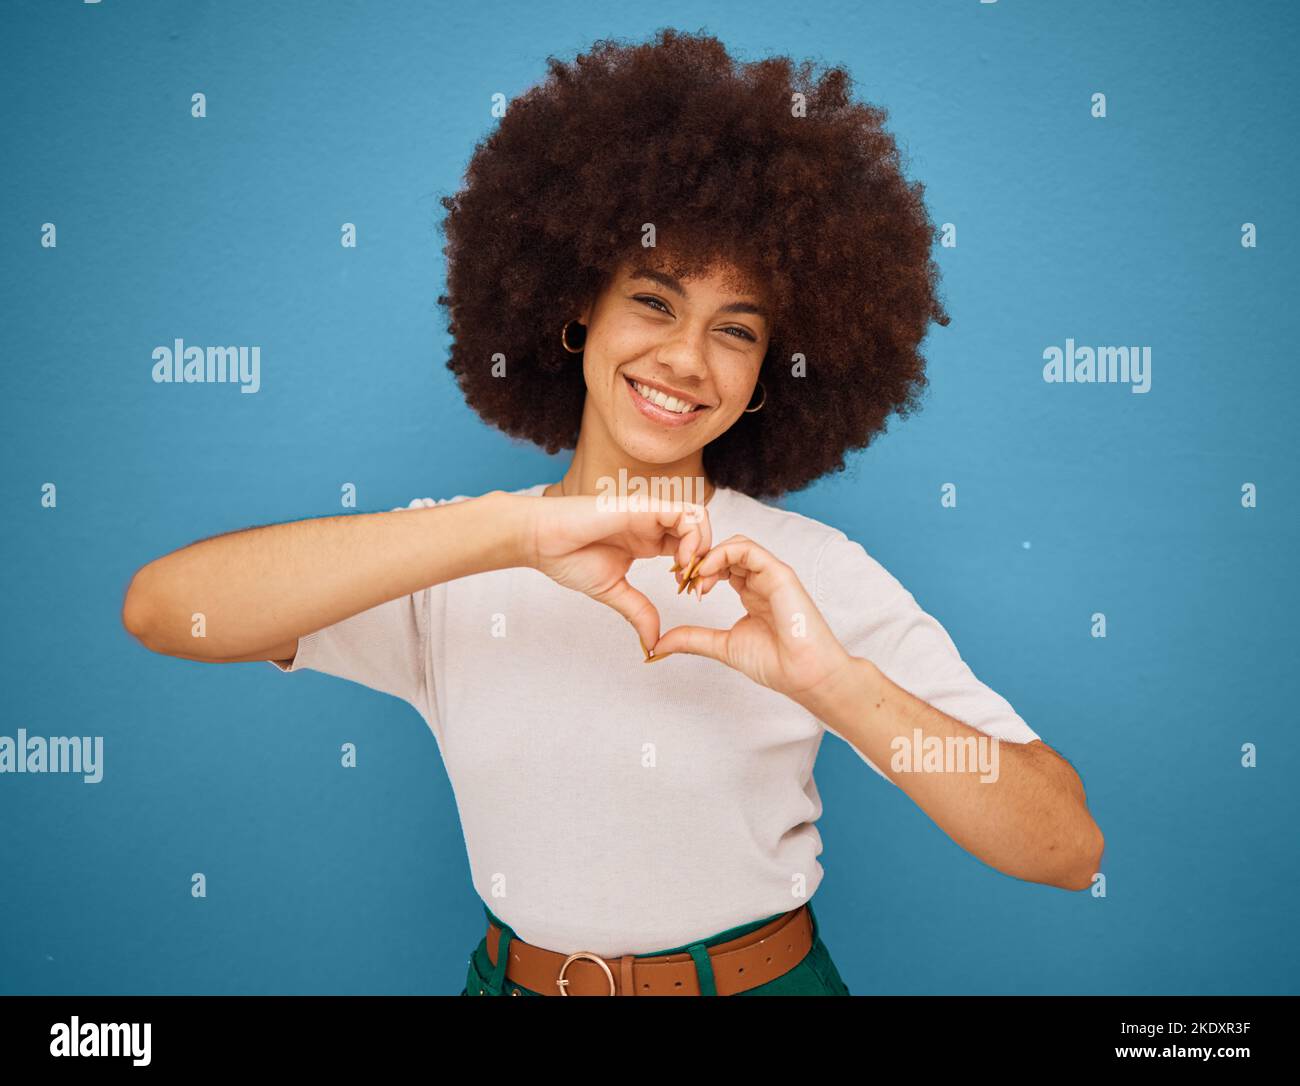 Coeur signe emoji, mains et fille afro sur fond bleu isolé Banque D'Images